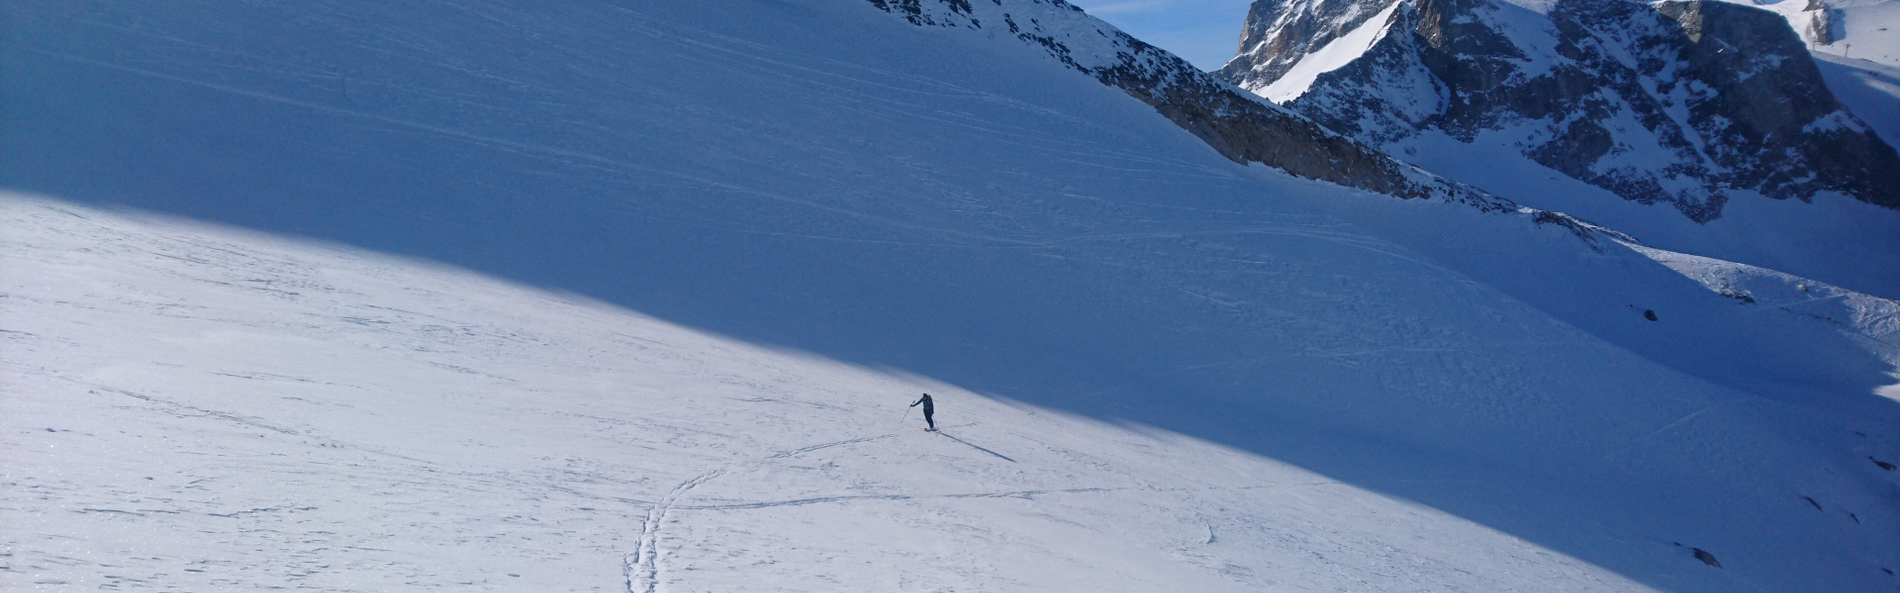 Skitourengeher am Weg zum Riffler